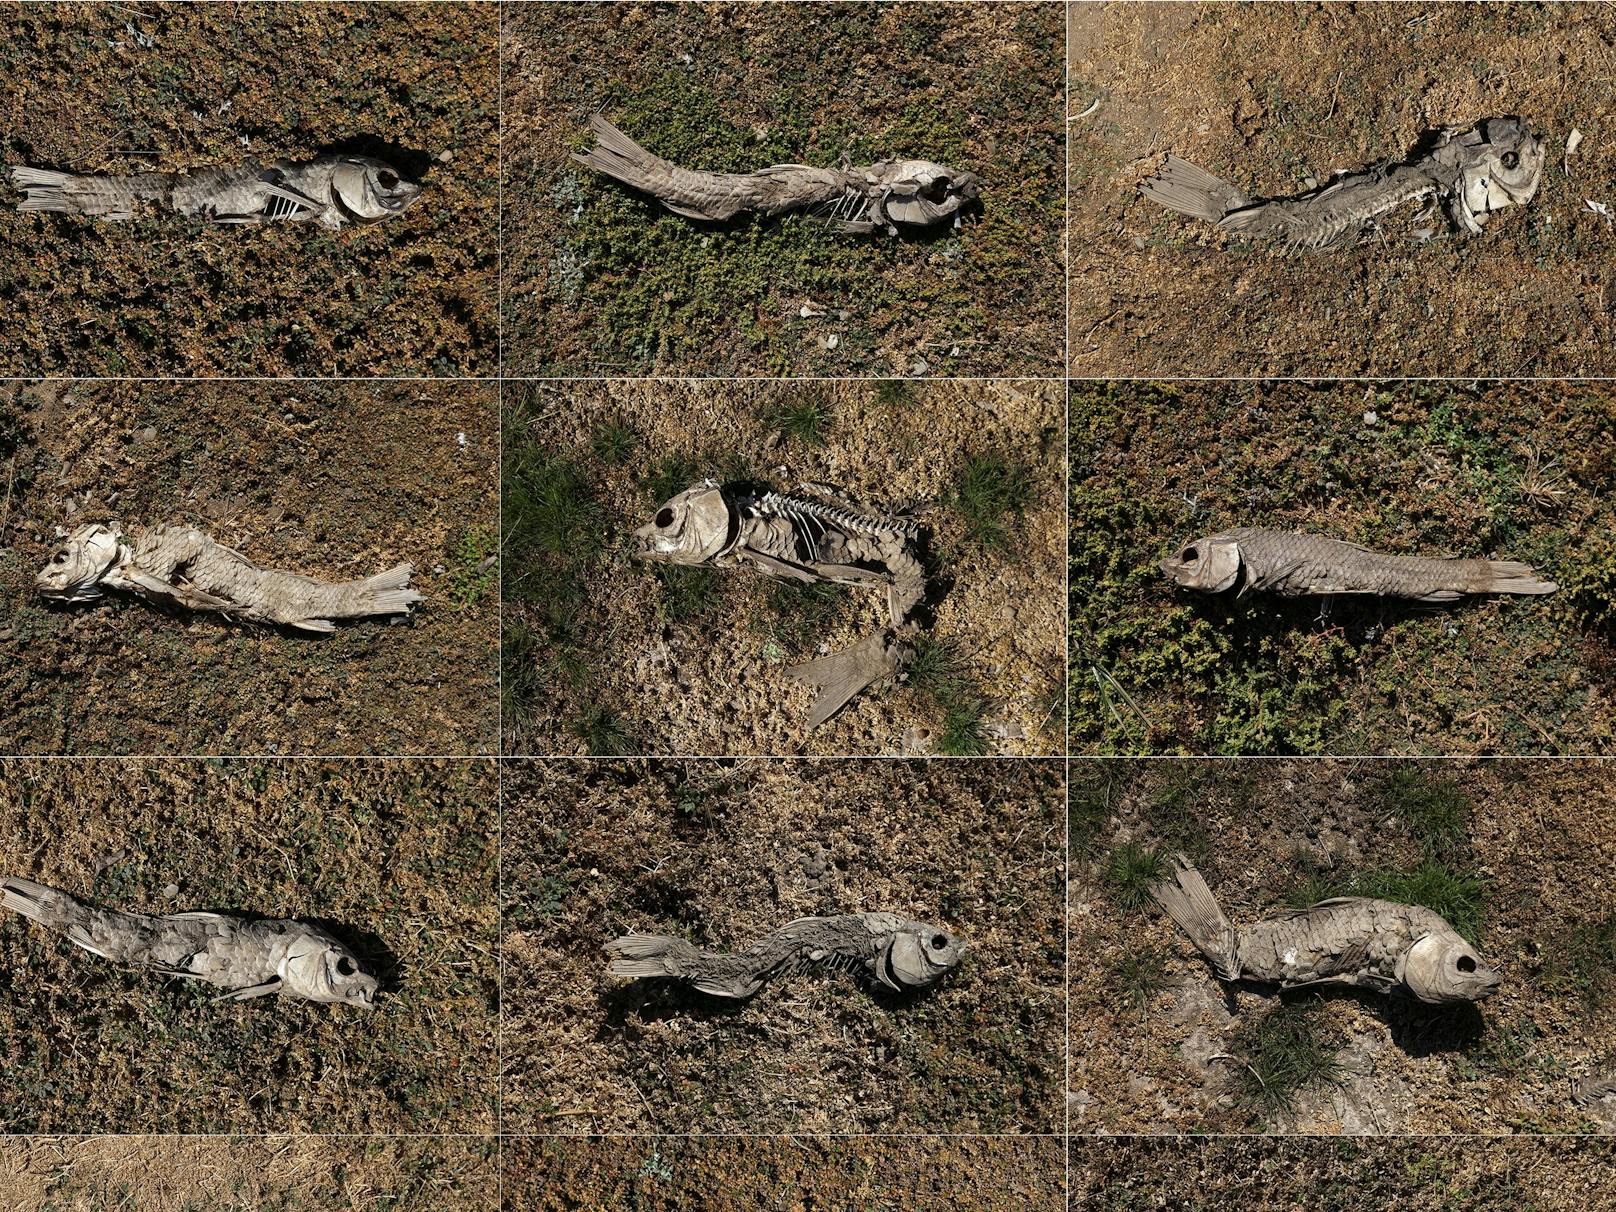 Die Foto-Collage zeigt tote Fische auf dem Boden des ehemaligen Peñuelas-Sees in Valparaiso, Chile.&nbsp;Eine riesige Fläche getrockneter und rissiger Erde, die einst das Seebett war, ist übersät mit Fischskeletten und verzweifelten Tieren, die nach Wasser suchen.